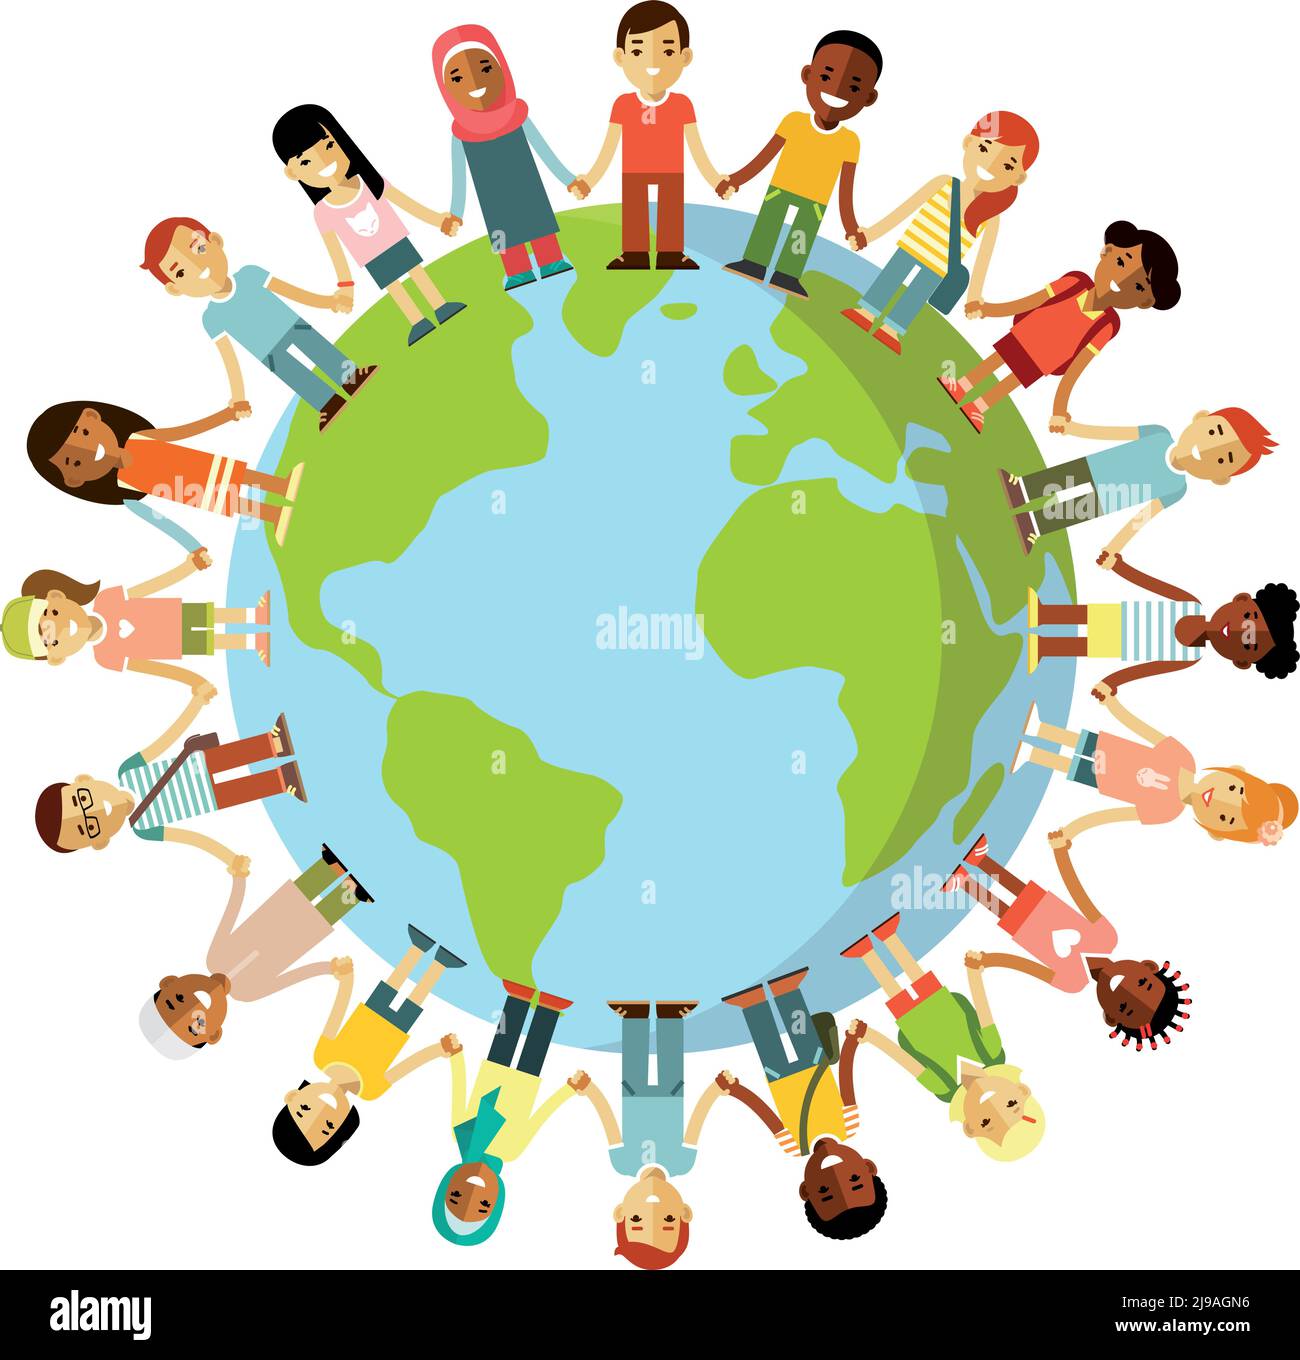 Verschiedene internationale multikulturelle Kinder stehen zusammen und halten die Hände auf der ganzen Welt Stock Vektor